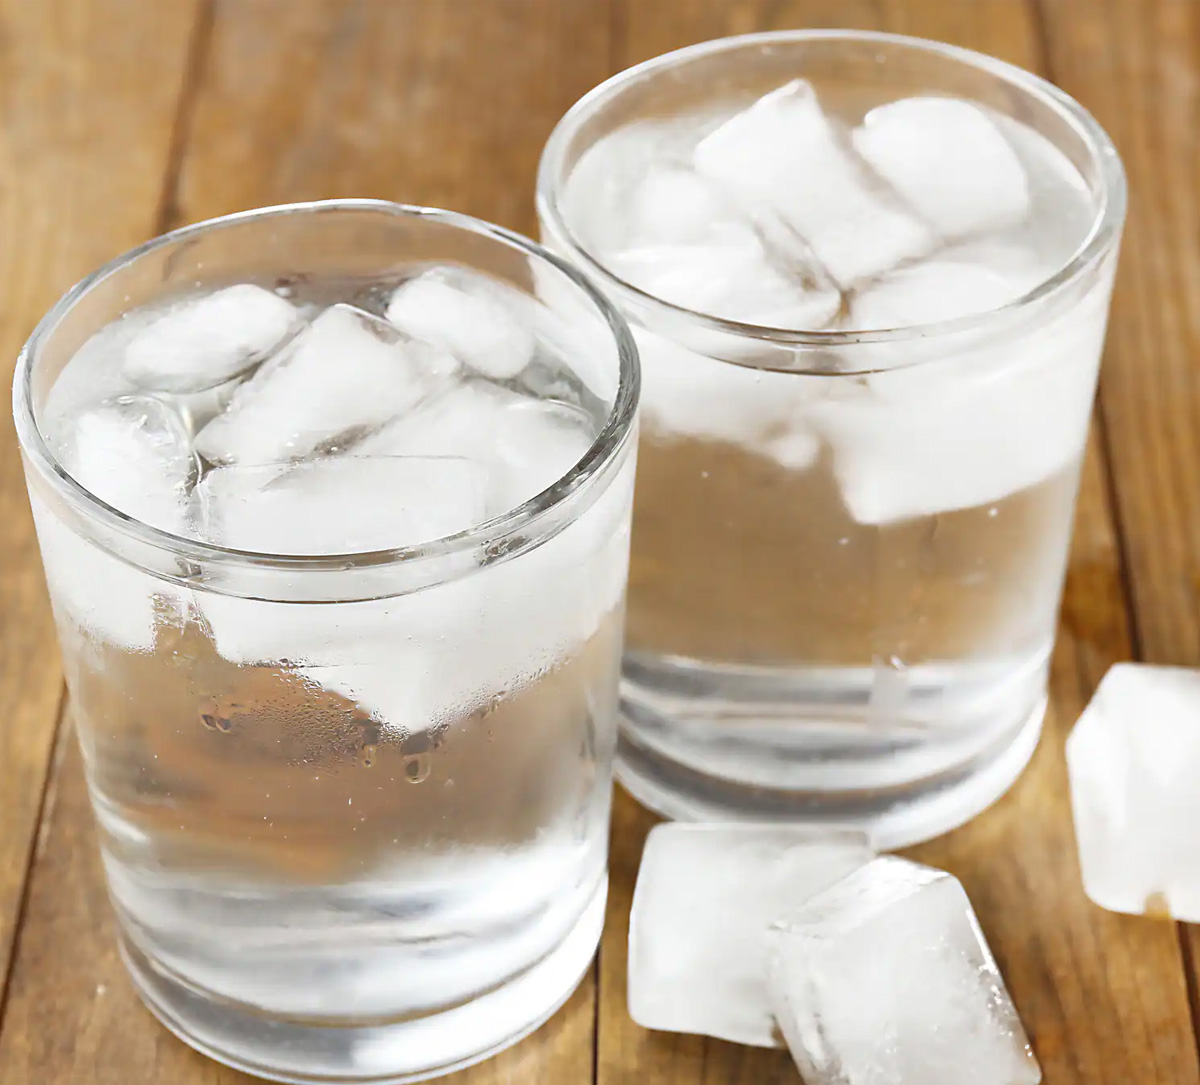 क्या वाकई ठंडा पानी पीना सेहत के लिए नुकसानदेह है? जानिए सच - image